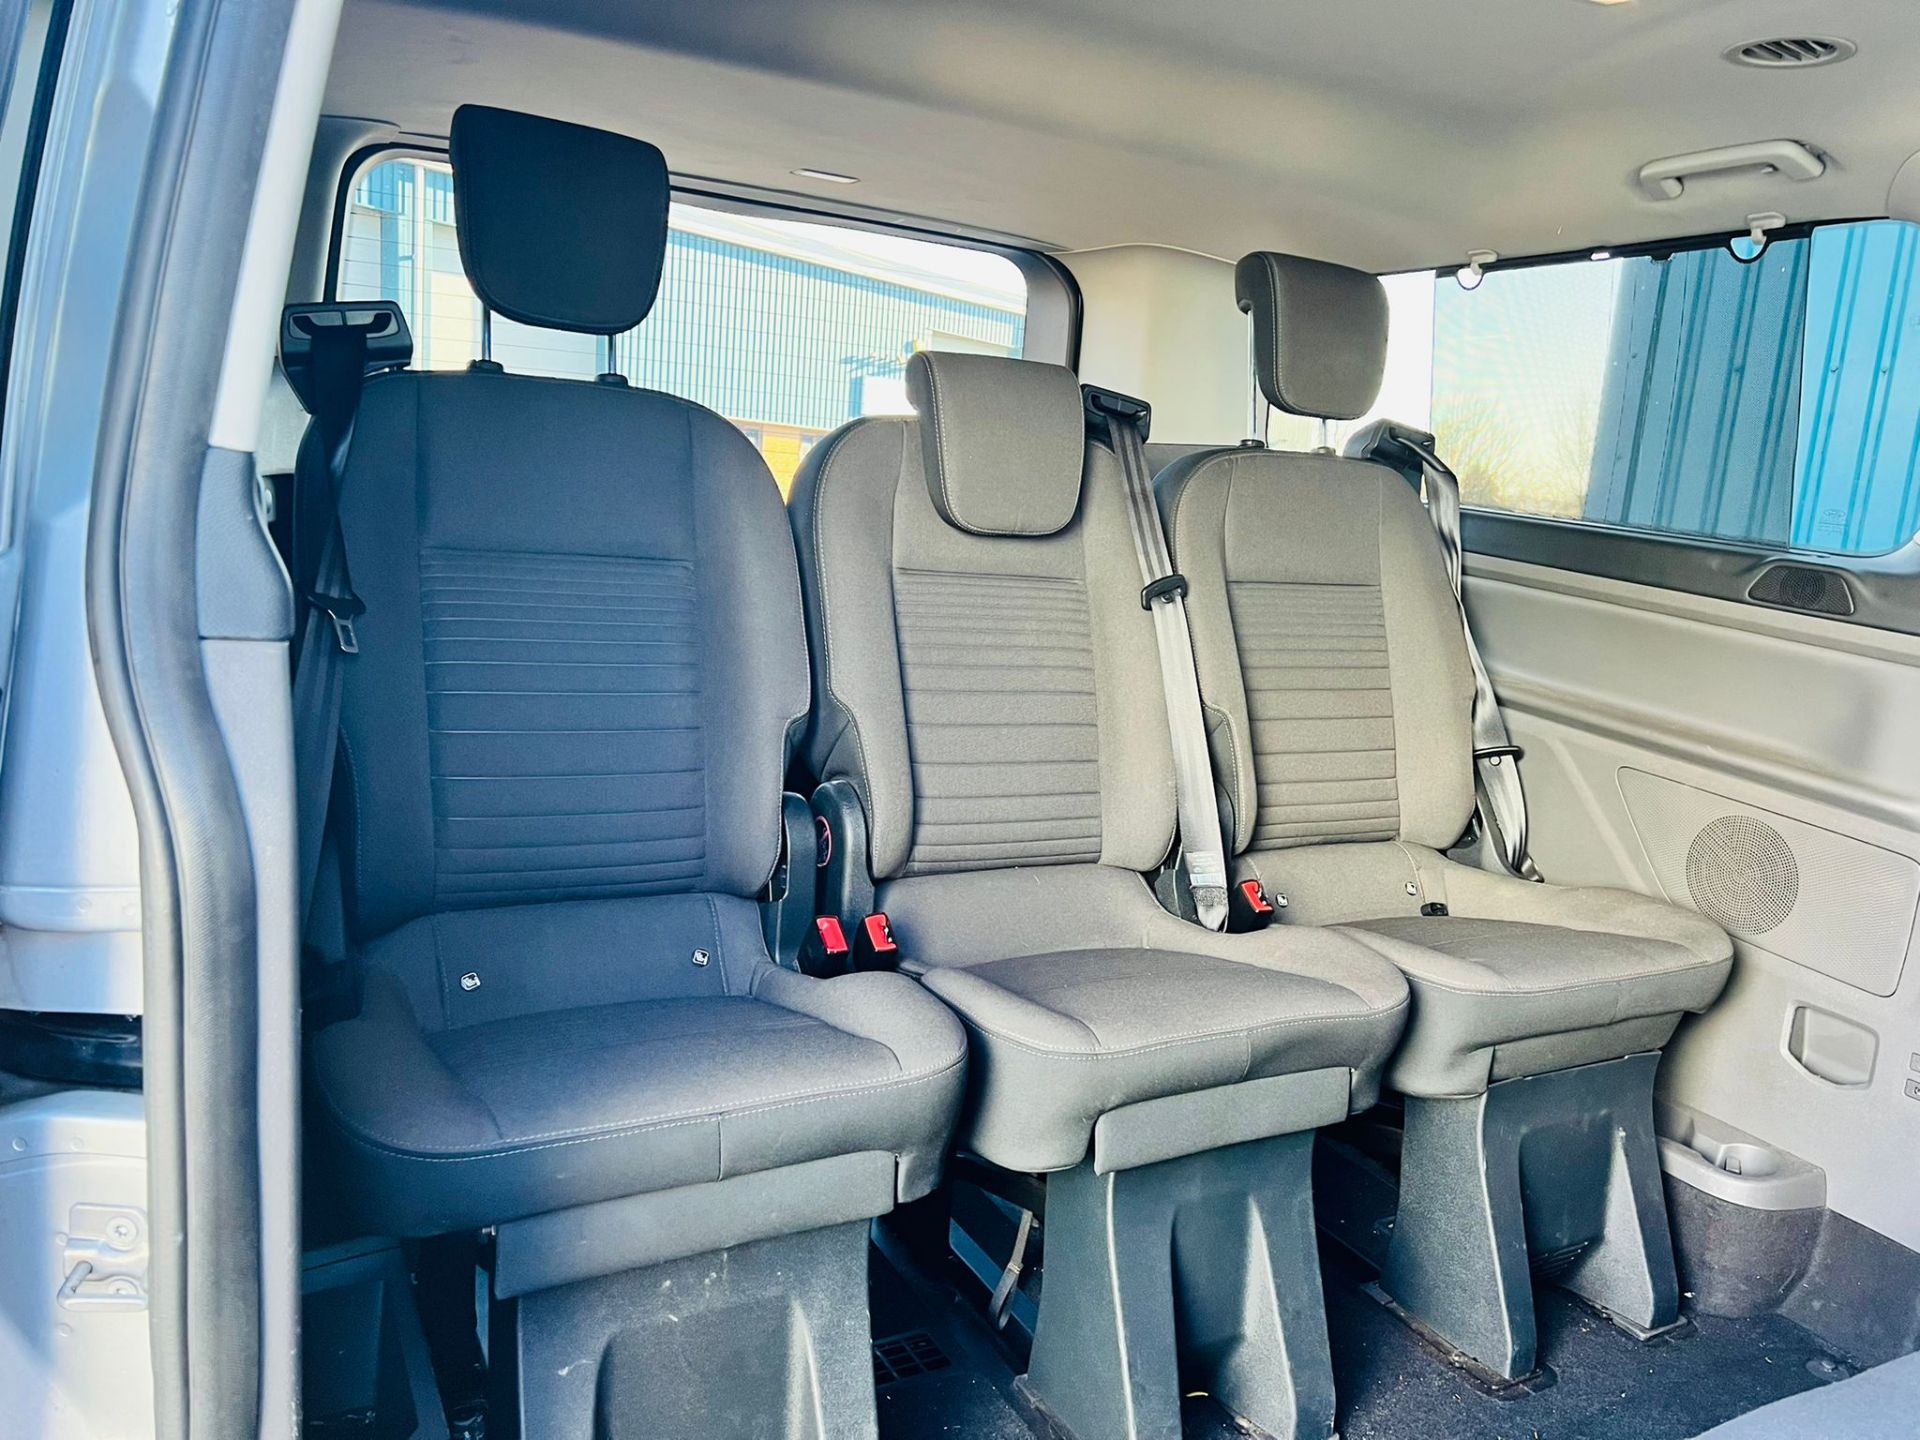 (Reserve Met) Ford Transit Custom 310 130 2.0 Tdci Titanium 9 Seater MiniBus 2019 Model - Air Con - - Image 11 of 36